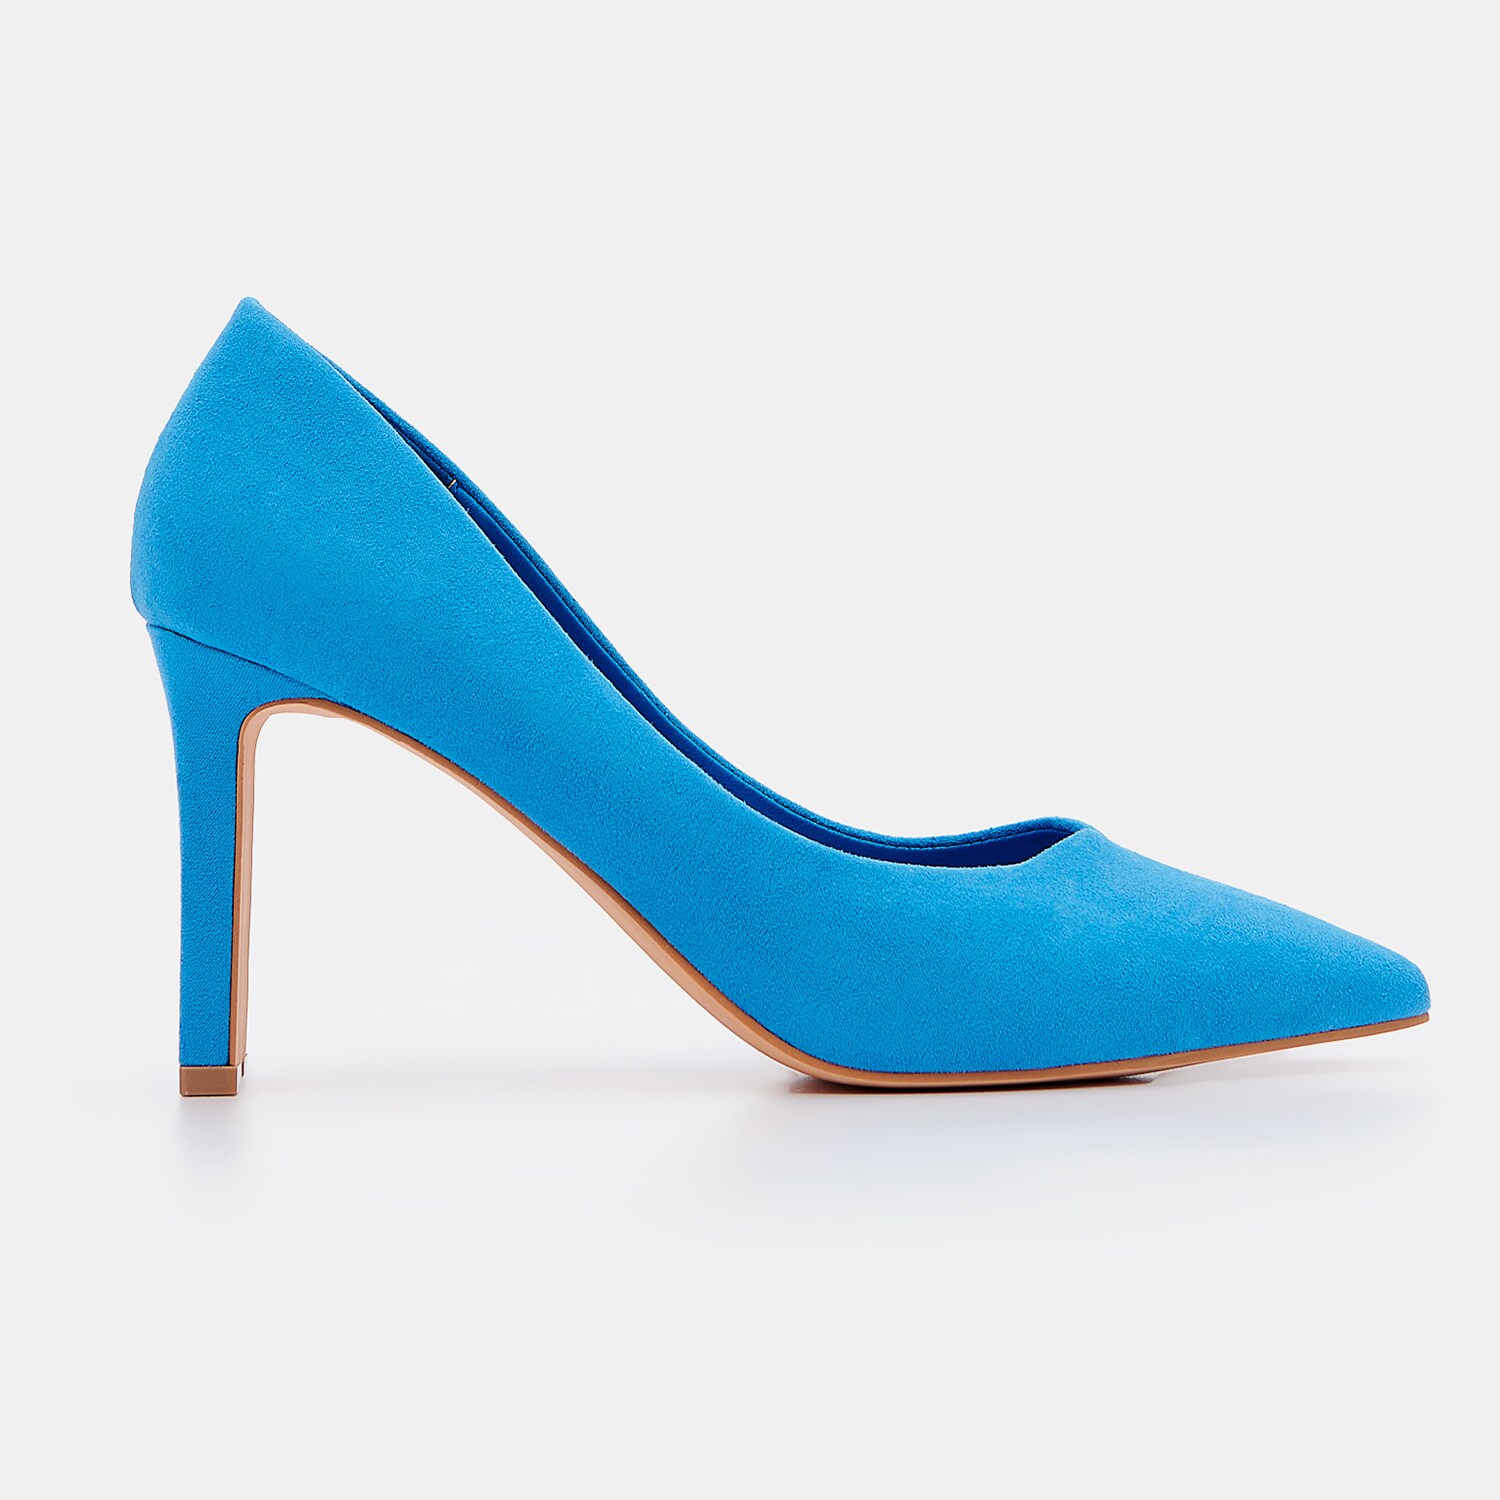 Mohito - Pantofi albastrii - Albastru image0